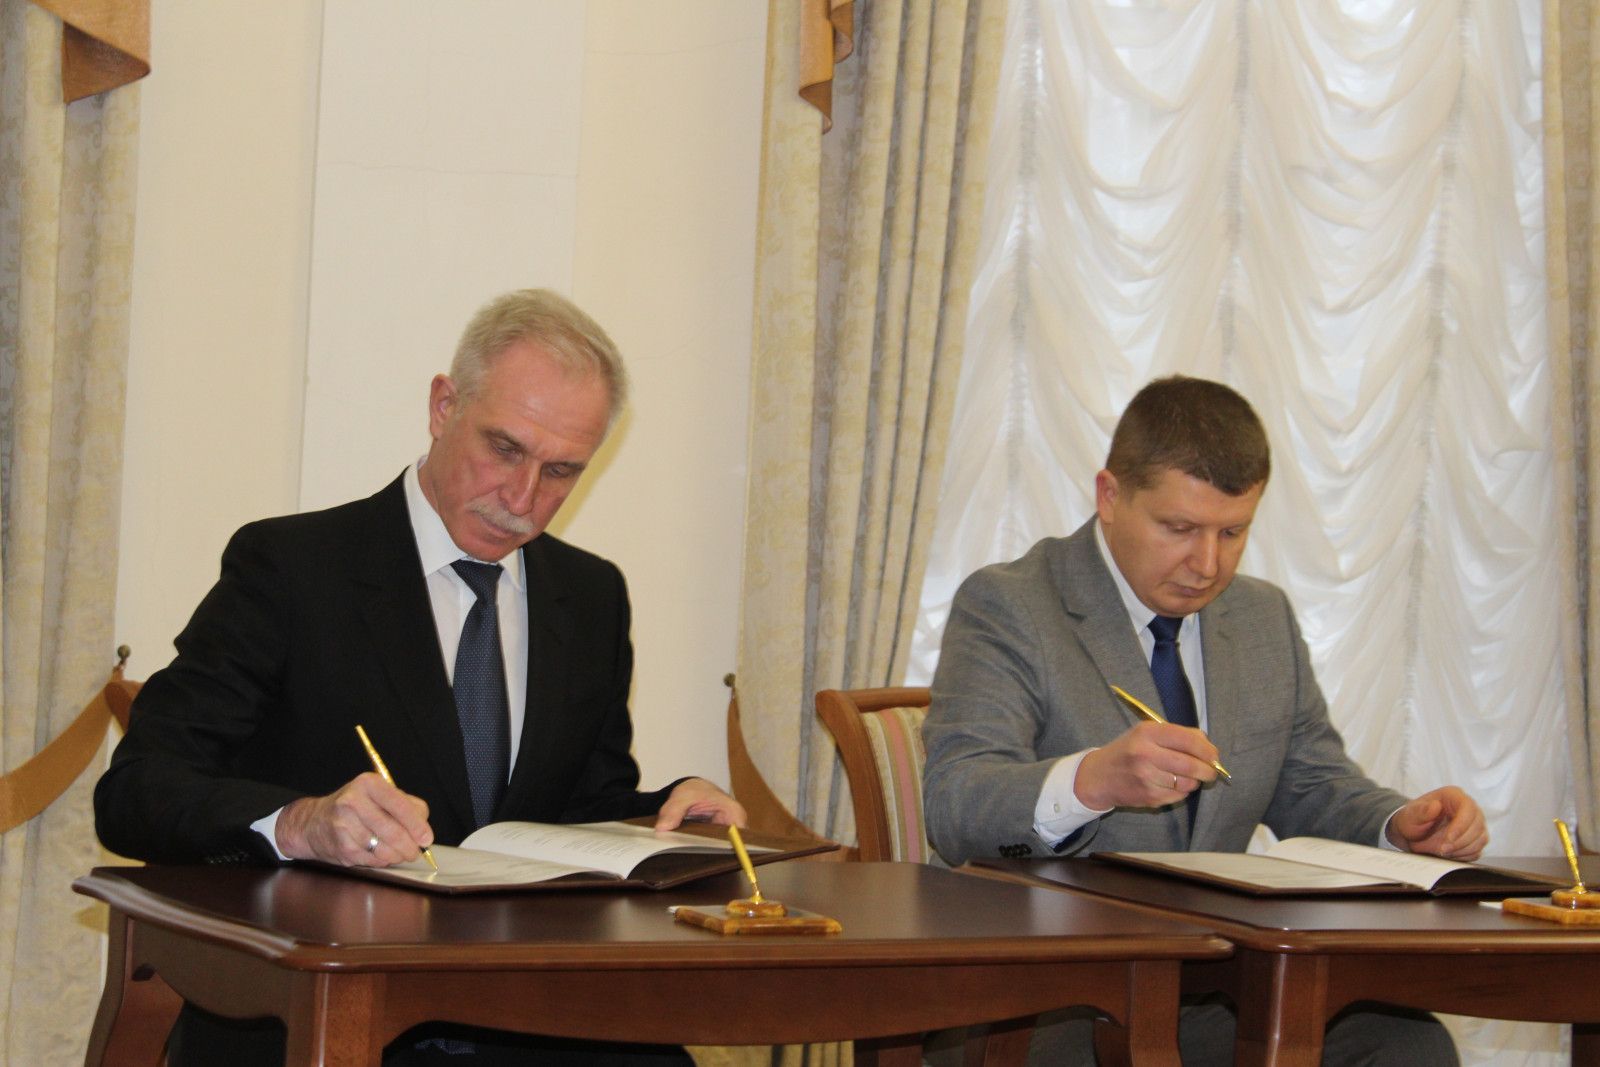 Ульяновская область будет сотрудничать с общественным движением «В защиту прав потребителей»